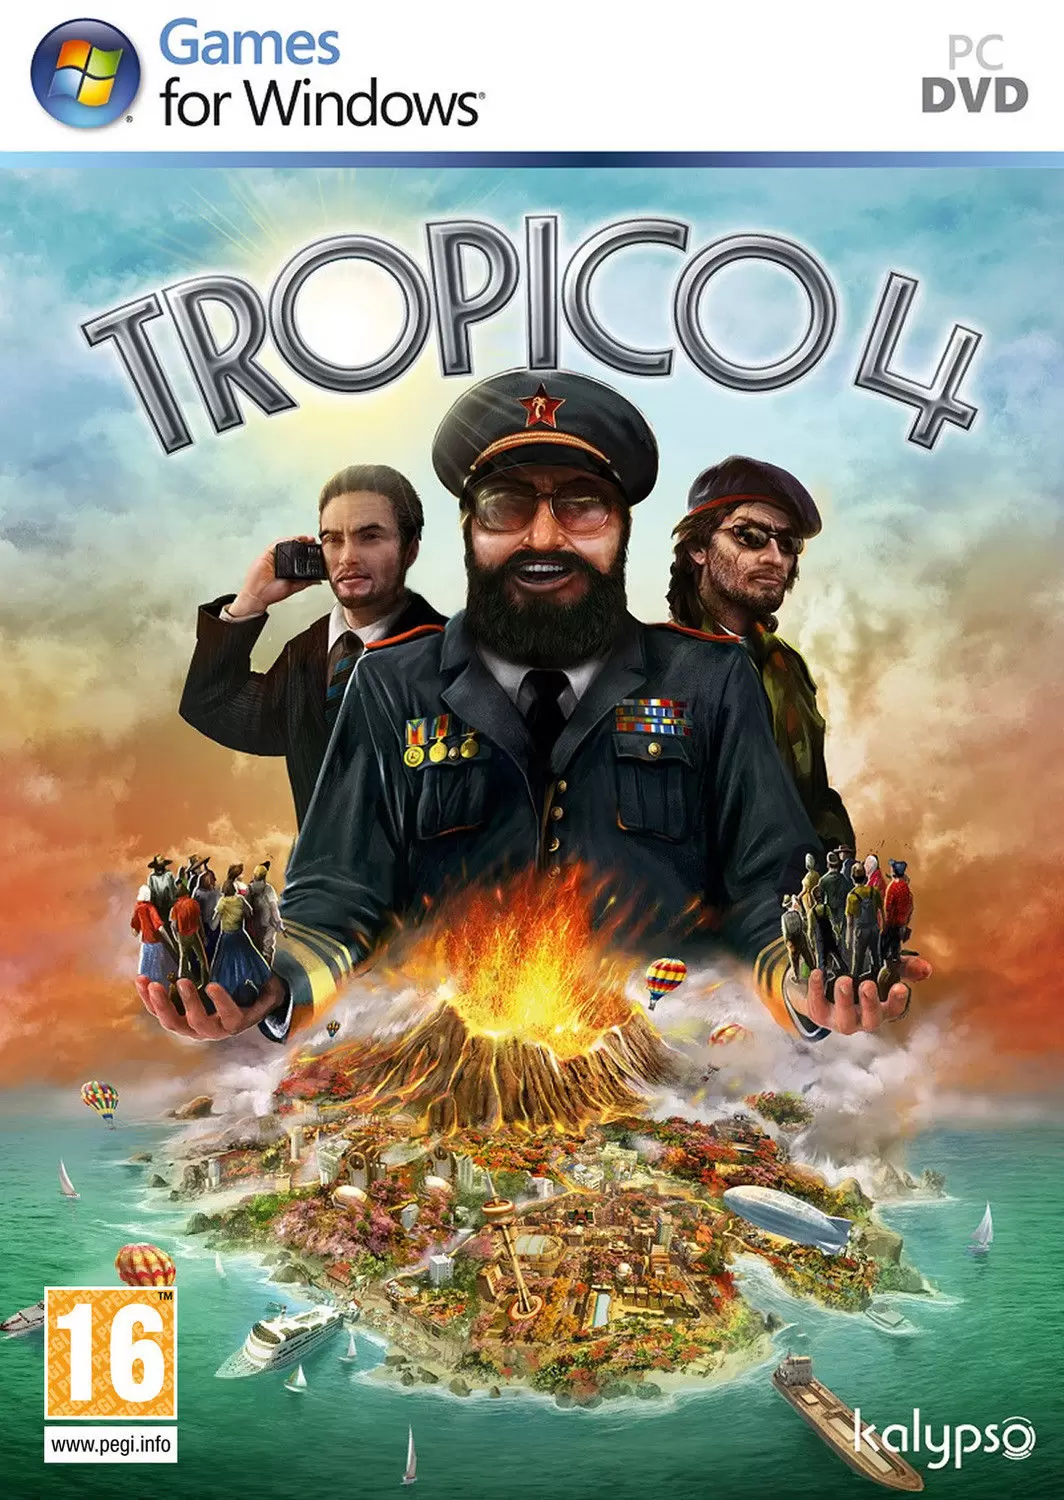 PC Games - Tropico 4